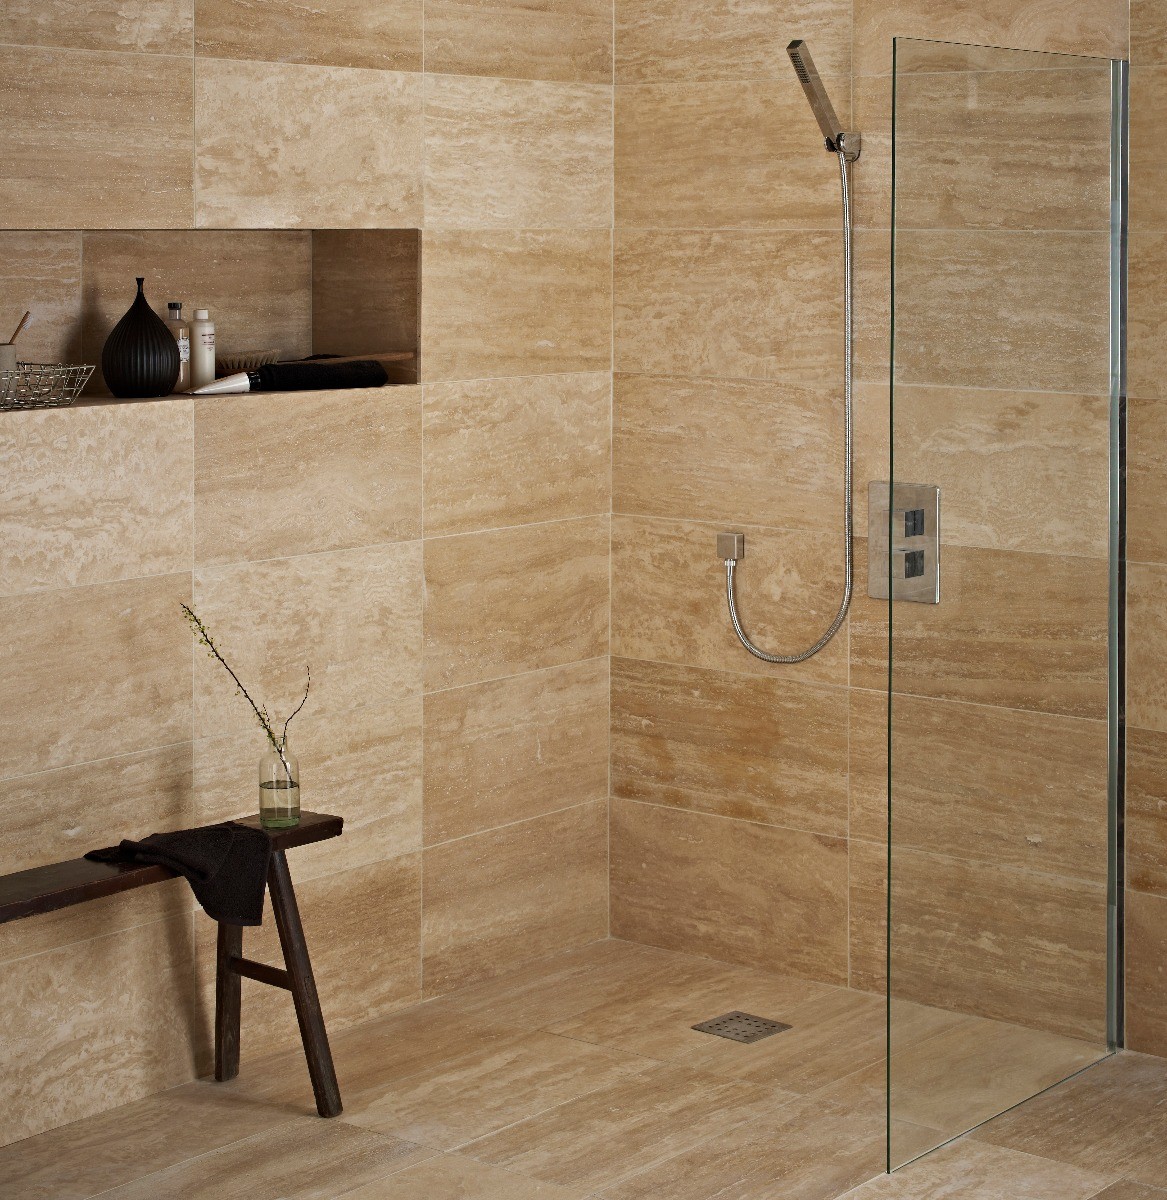 Sandelwood Travertine Topps Tiles, Travertine Bathroom Floor Tiles